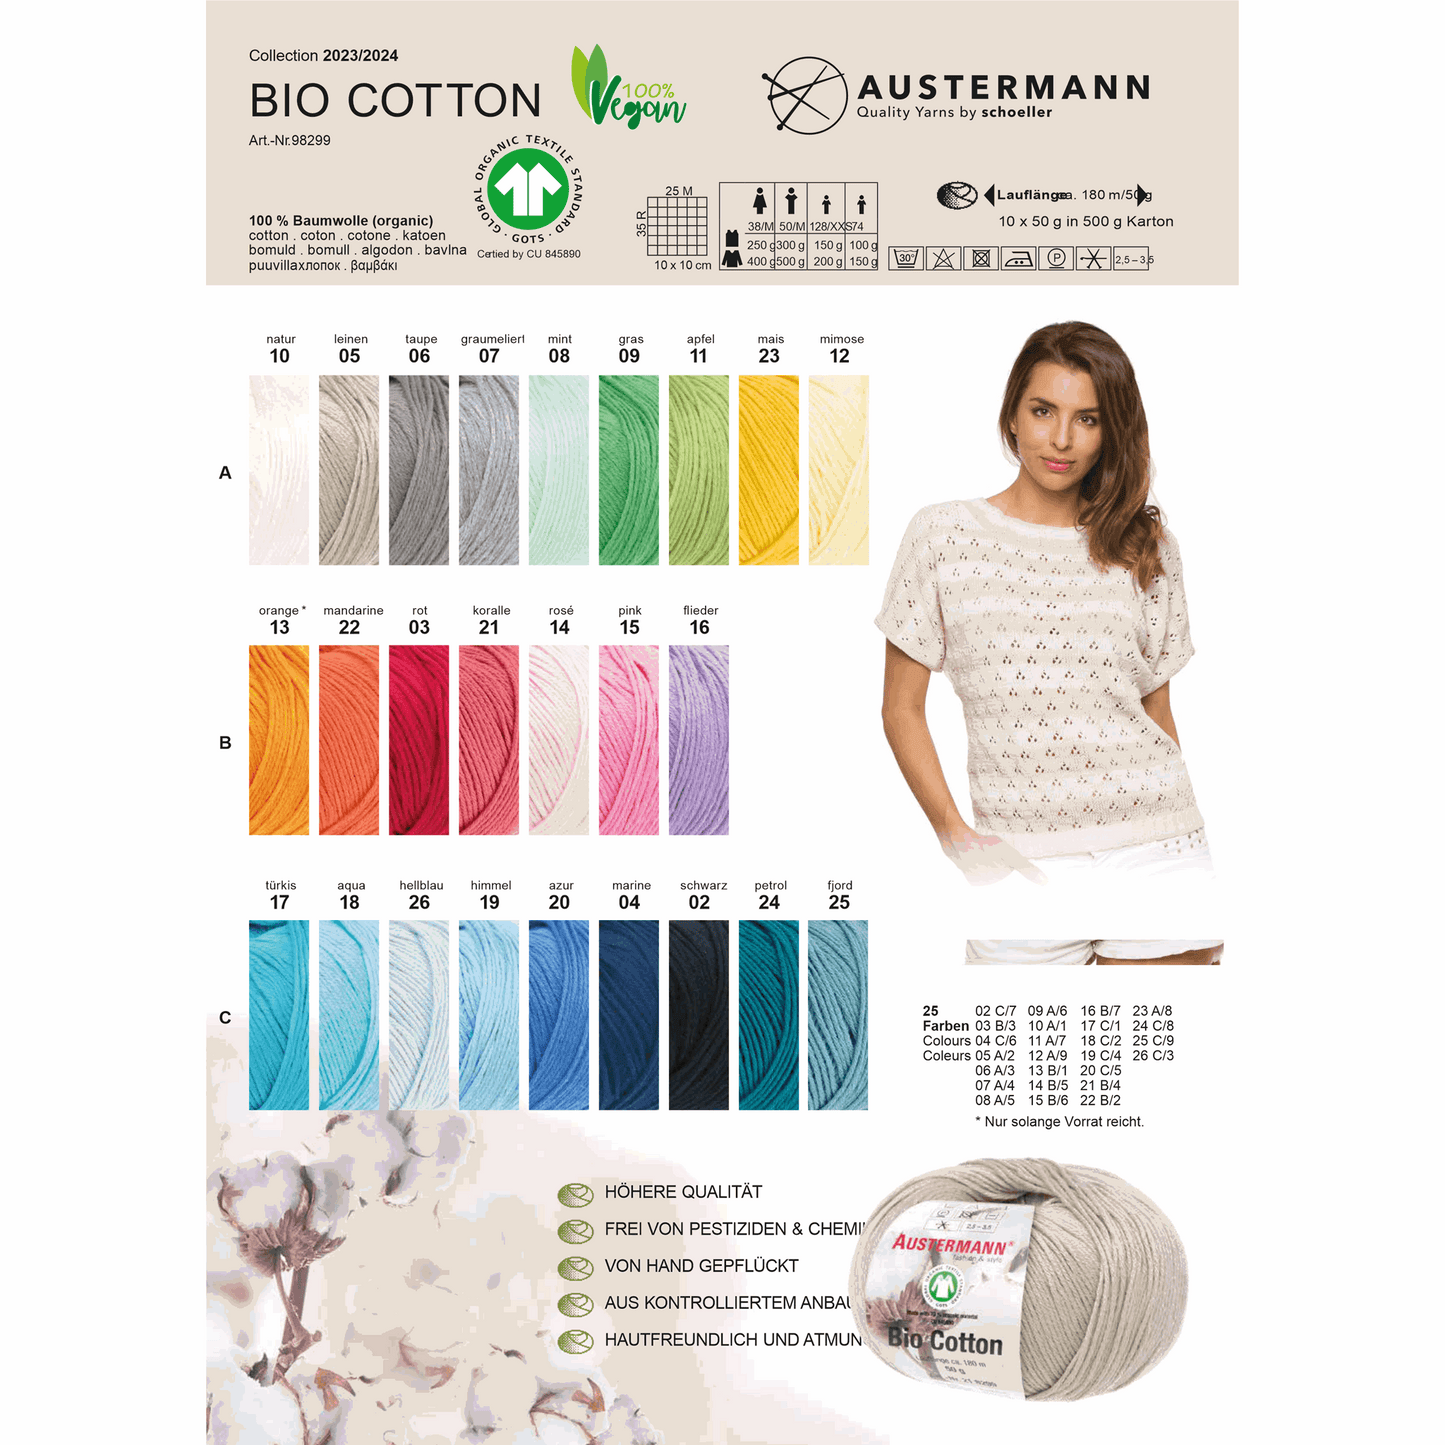 Schoeller-Austermann Gots Bio Cotton, 50g, 98299, Farbe  18